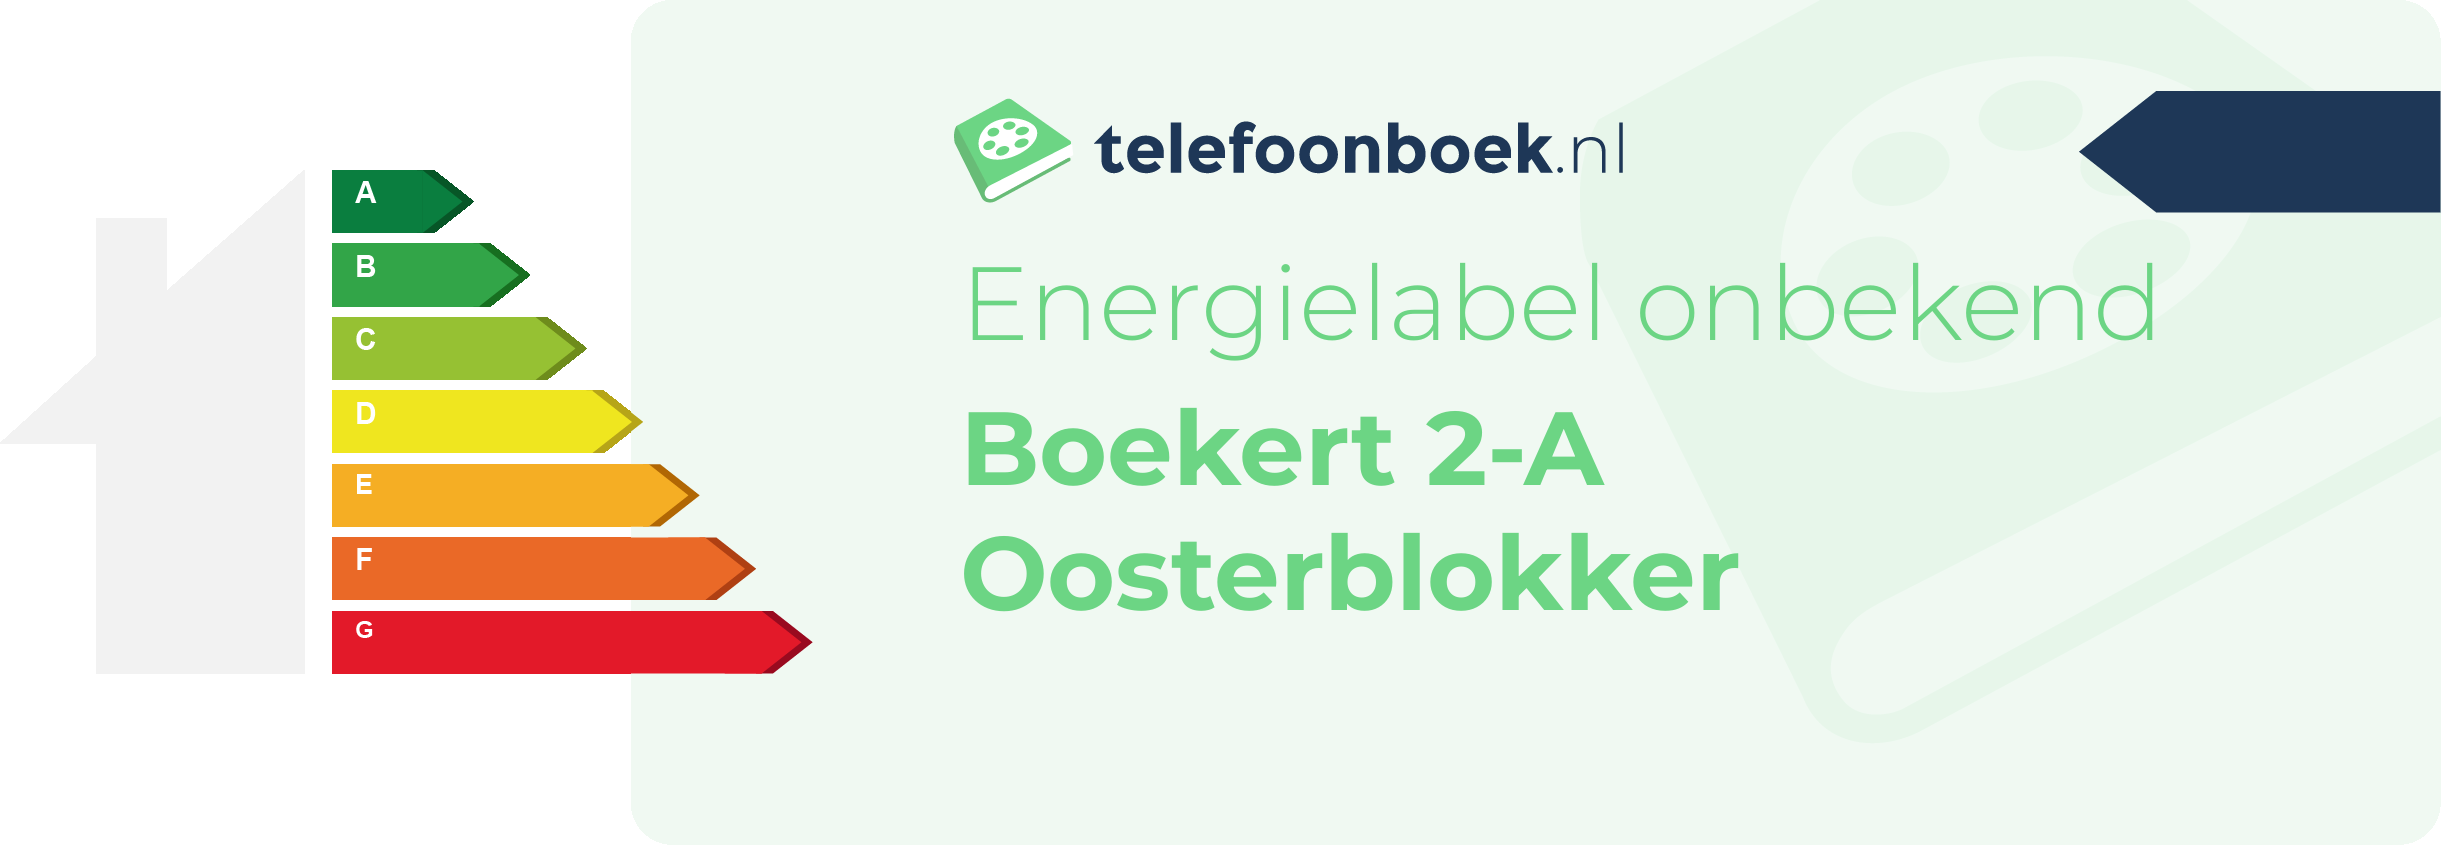 Energielabel Boekert 2-A Oosterblokker